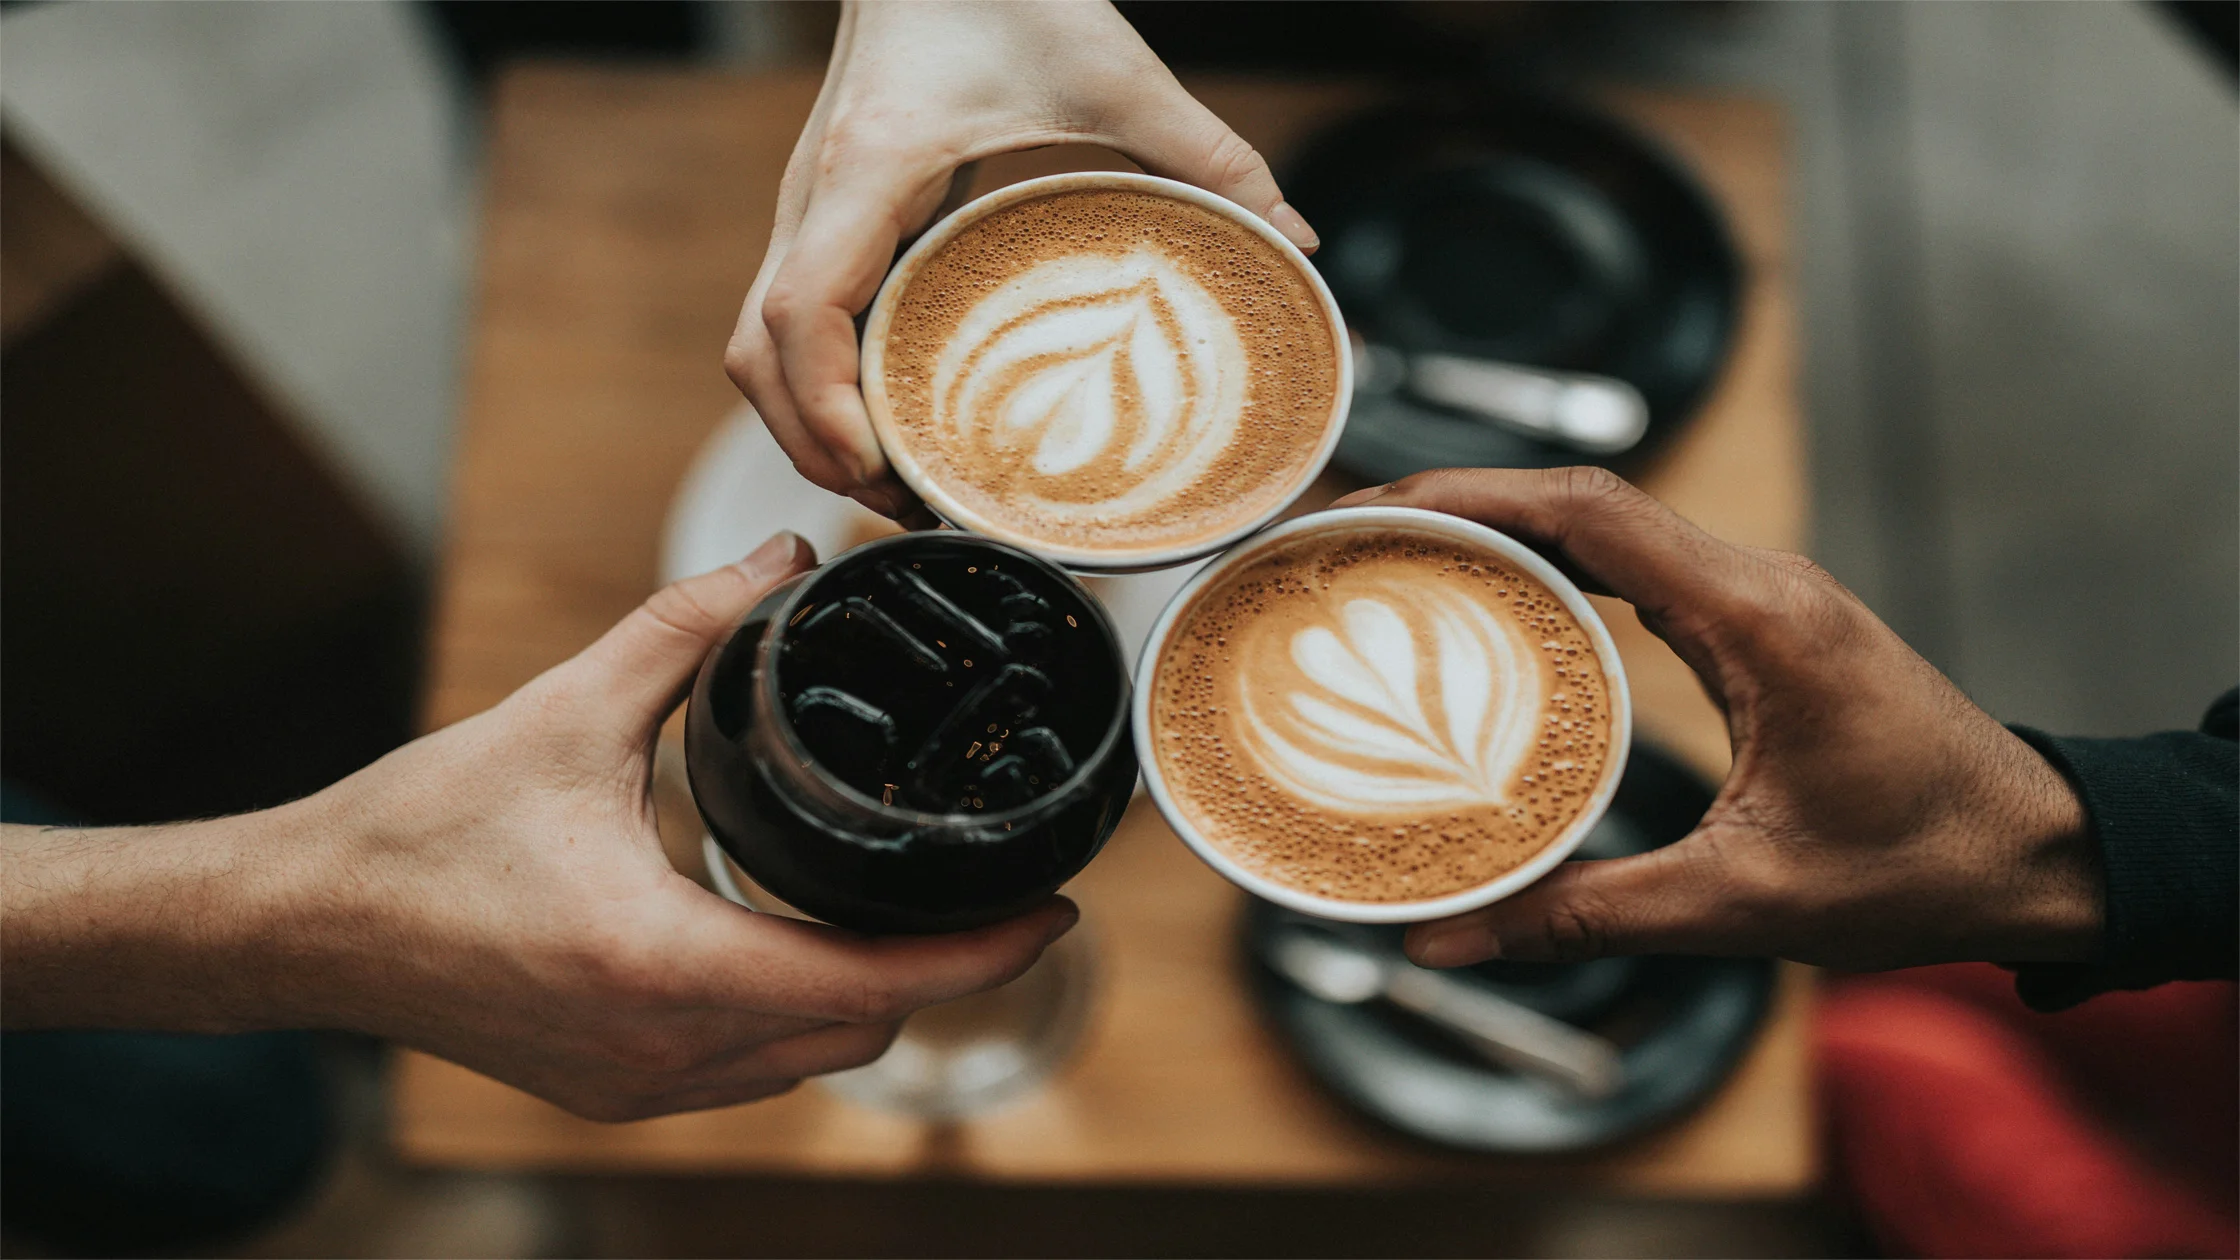 Met Déze 5 Tips Creëer Jij Je Eigen Koffiehoek!